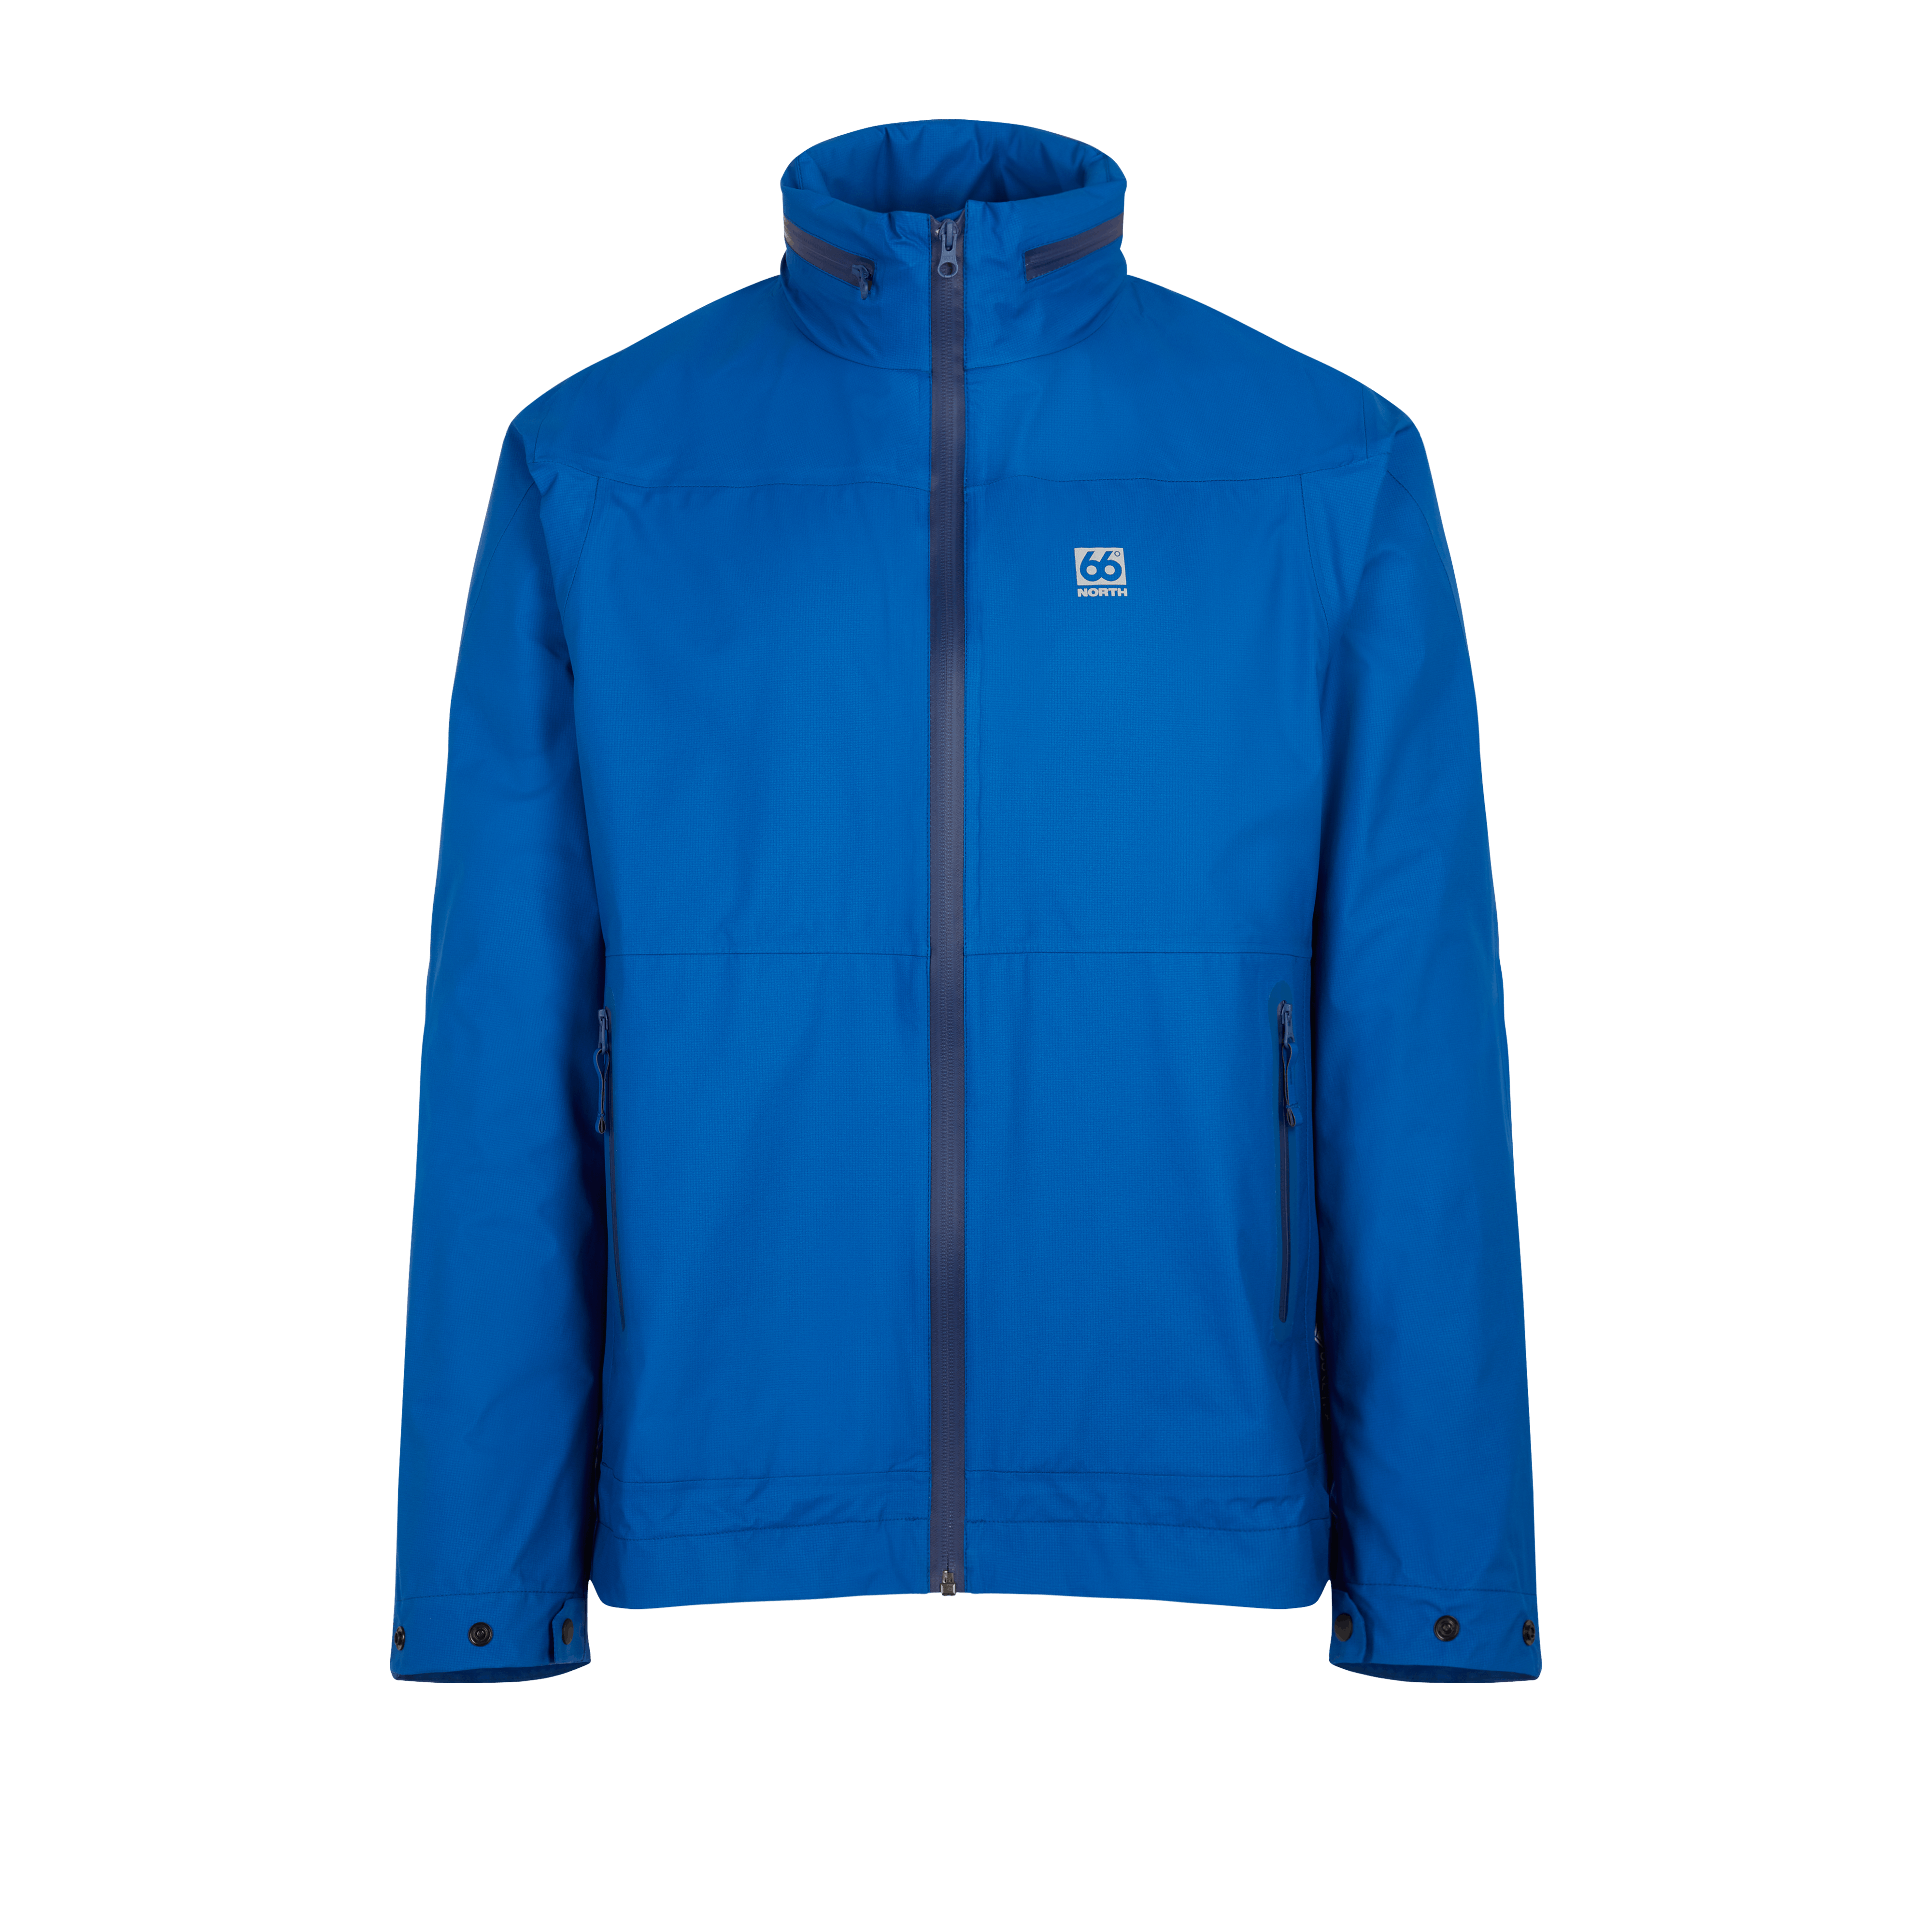 66 North Men's Keilir Jackets & Coats In Blue Hour